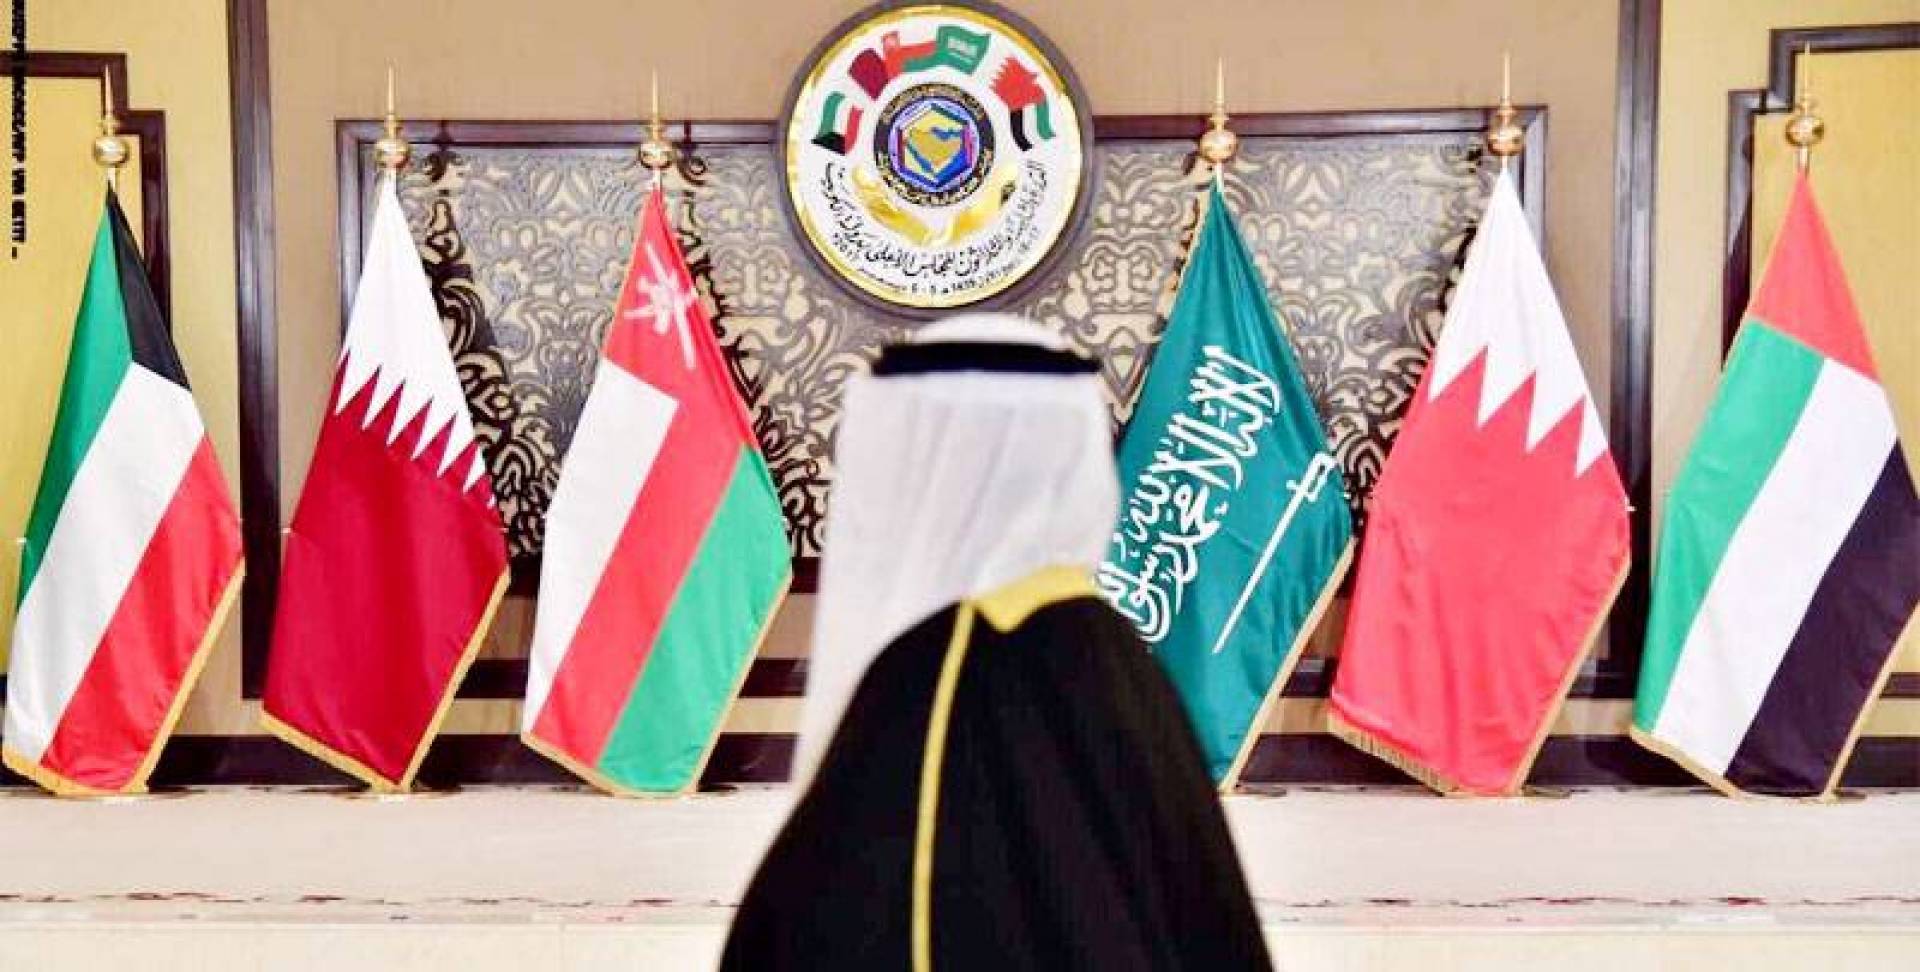   حكومية   رسائل الكويت للسعودية لـ«لمّ الشمل الخليجي»